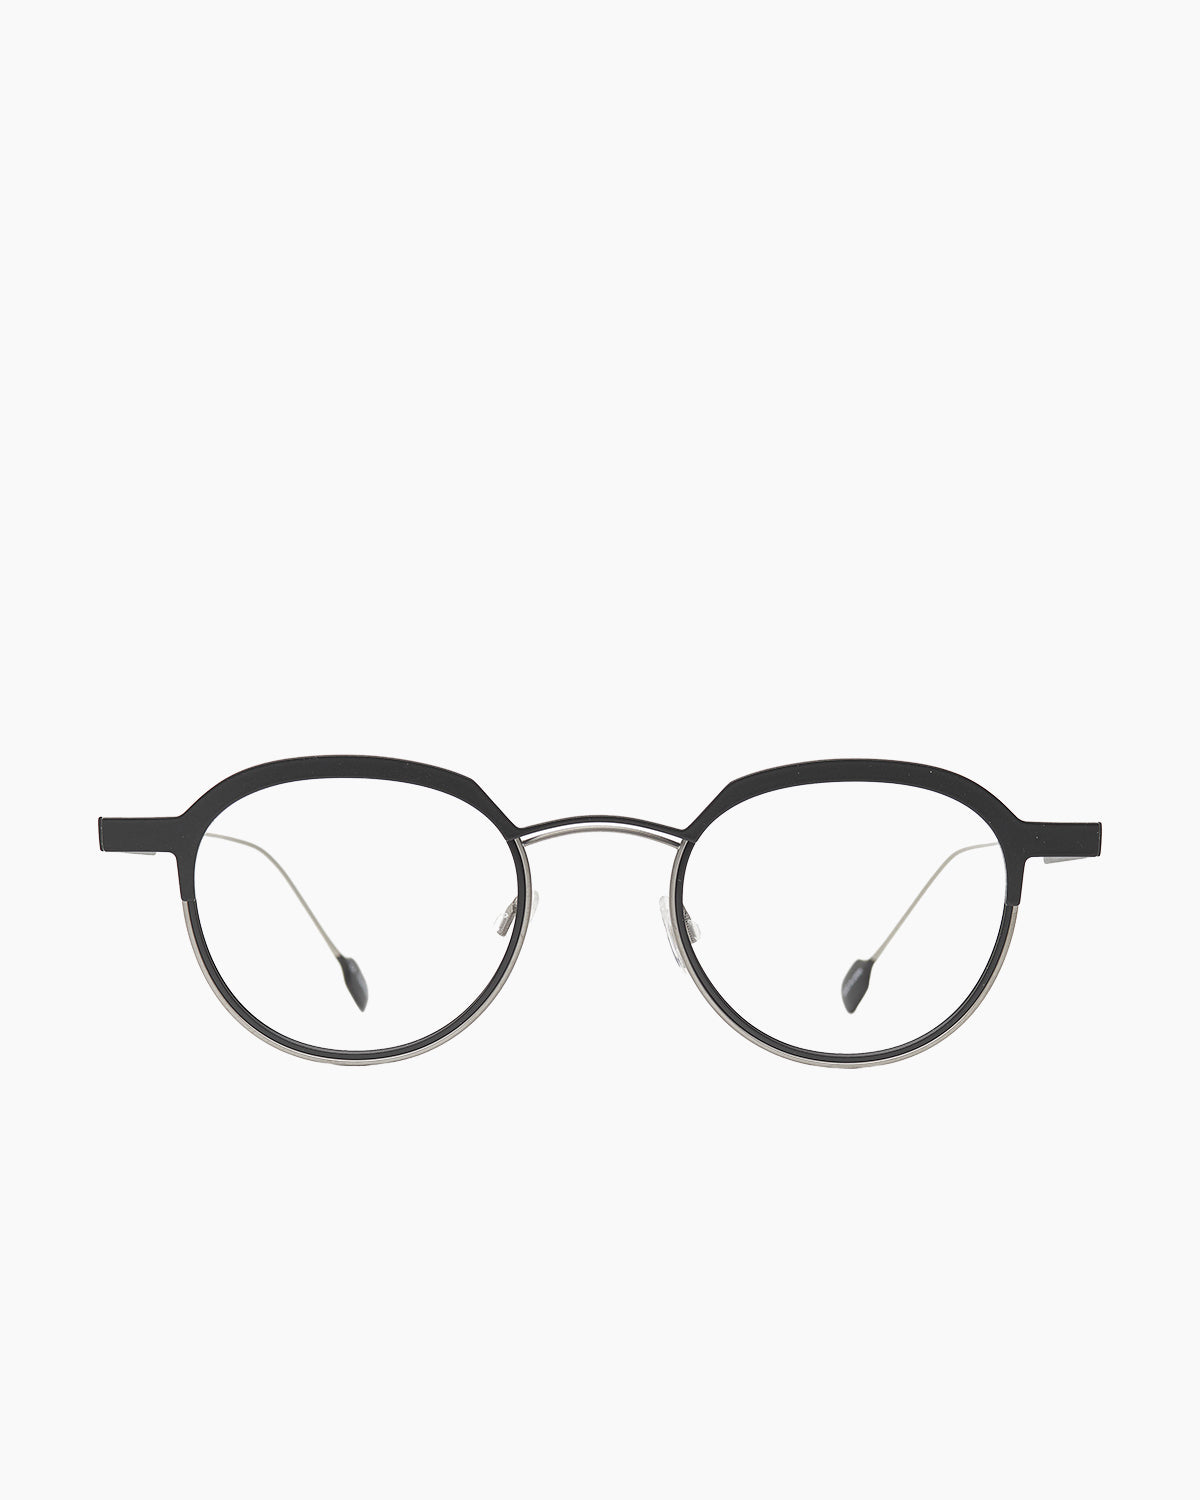 Anne et Valentin - Reflex - 9C37 | Bar à lunettes